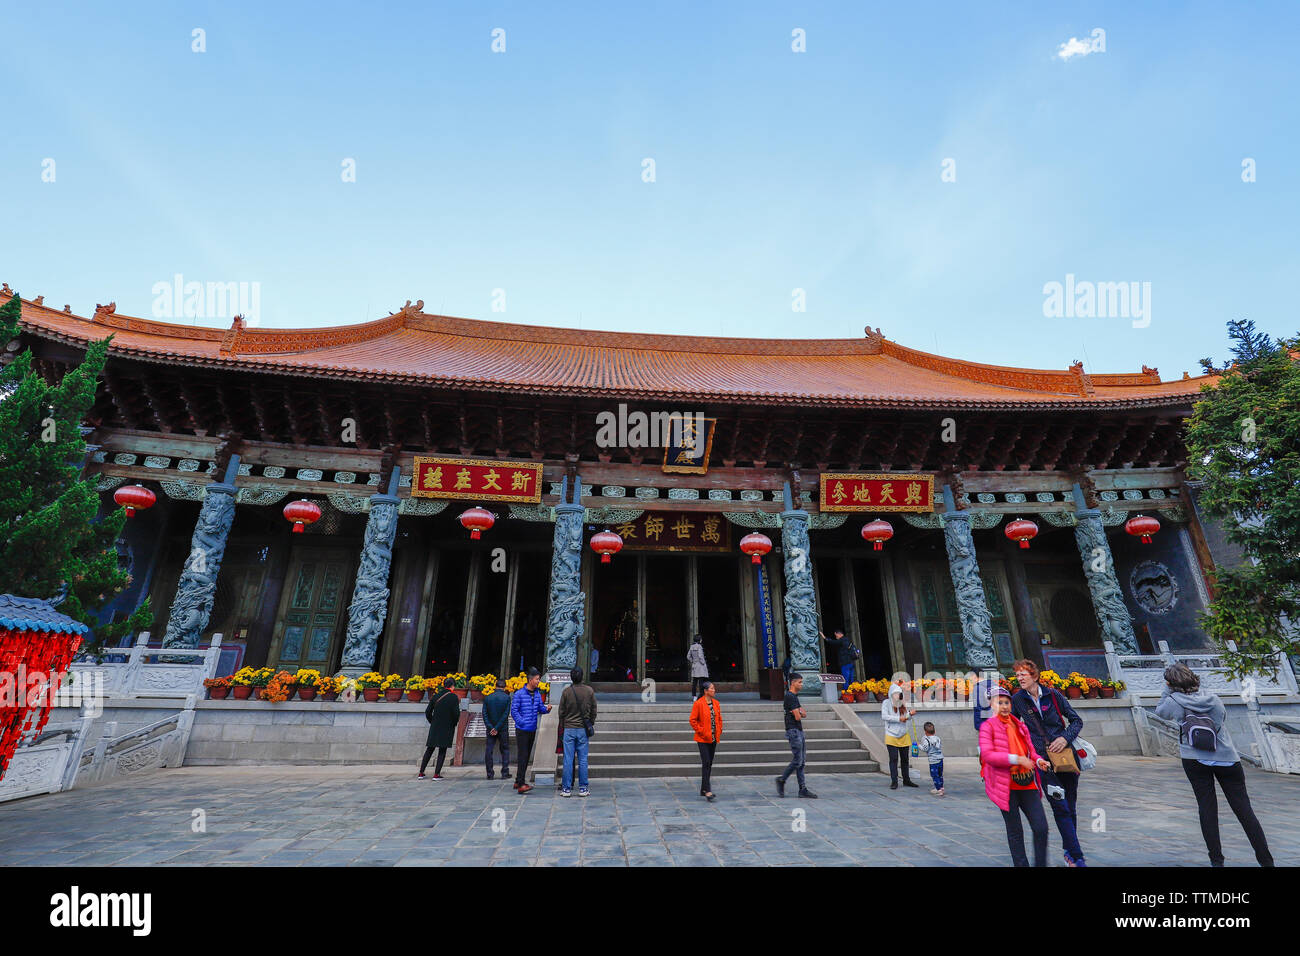 Temple de Confucius de Dali dans l'ancienne ville de Dali, vieille ville de Dali, Yunnan, Chine. Dali, Yunnan, Chine - novembre,2018. Banque D'Images